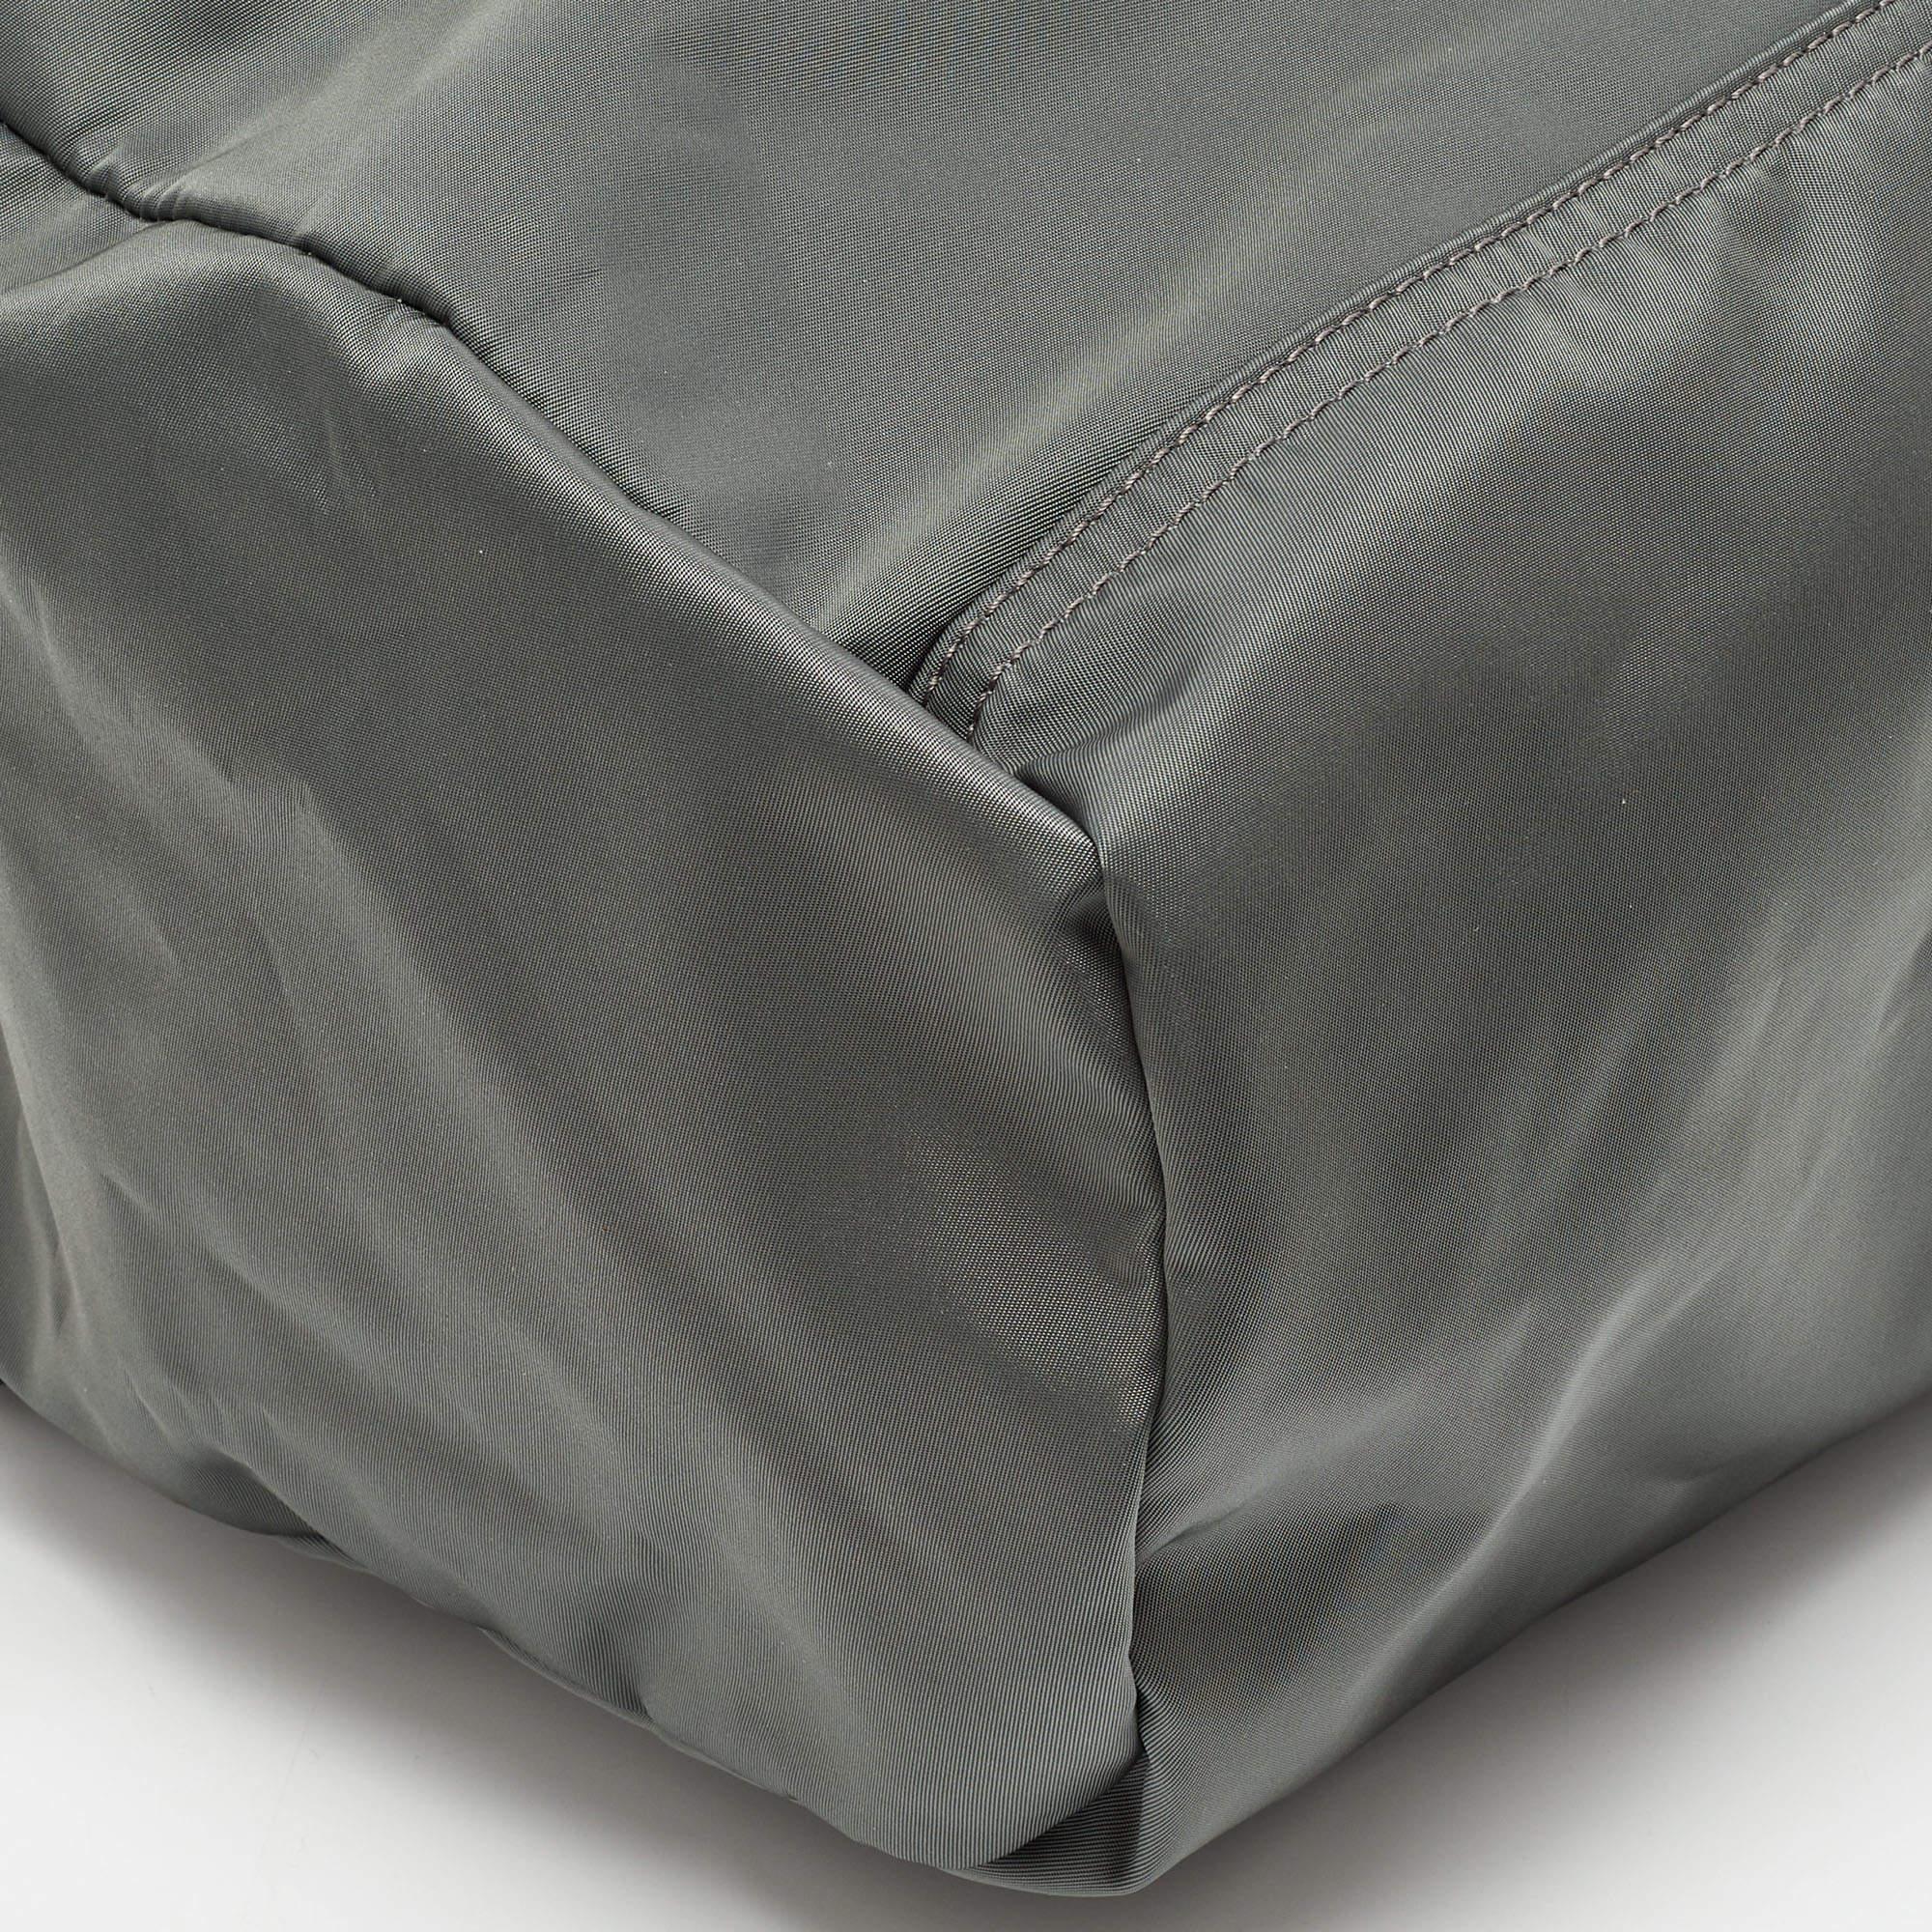 Givenchy Grey/Black Nylon Pandora Top Handle Bag In Good Condition For Sale In Dubai, Al Qouz 2